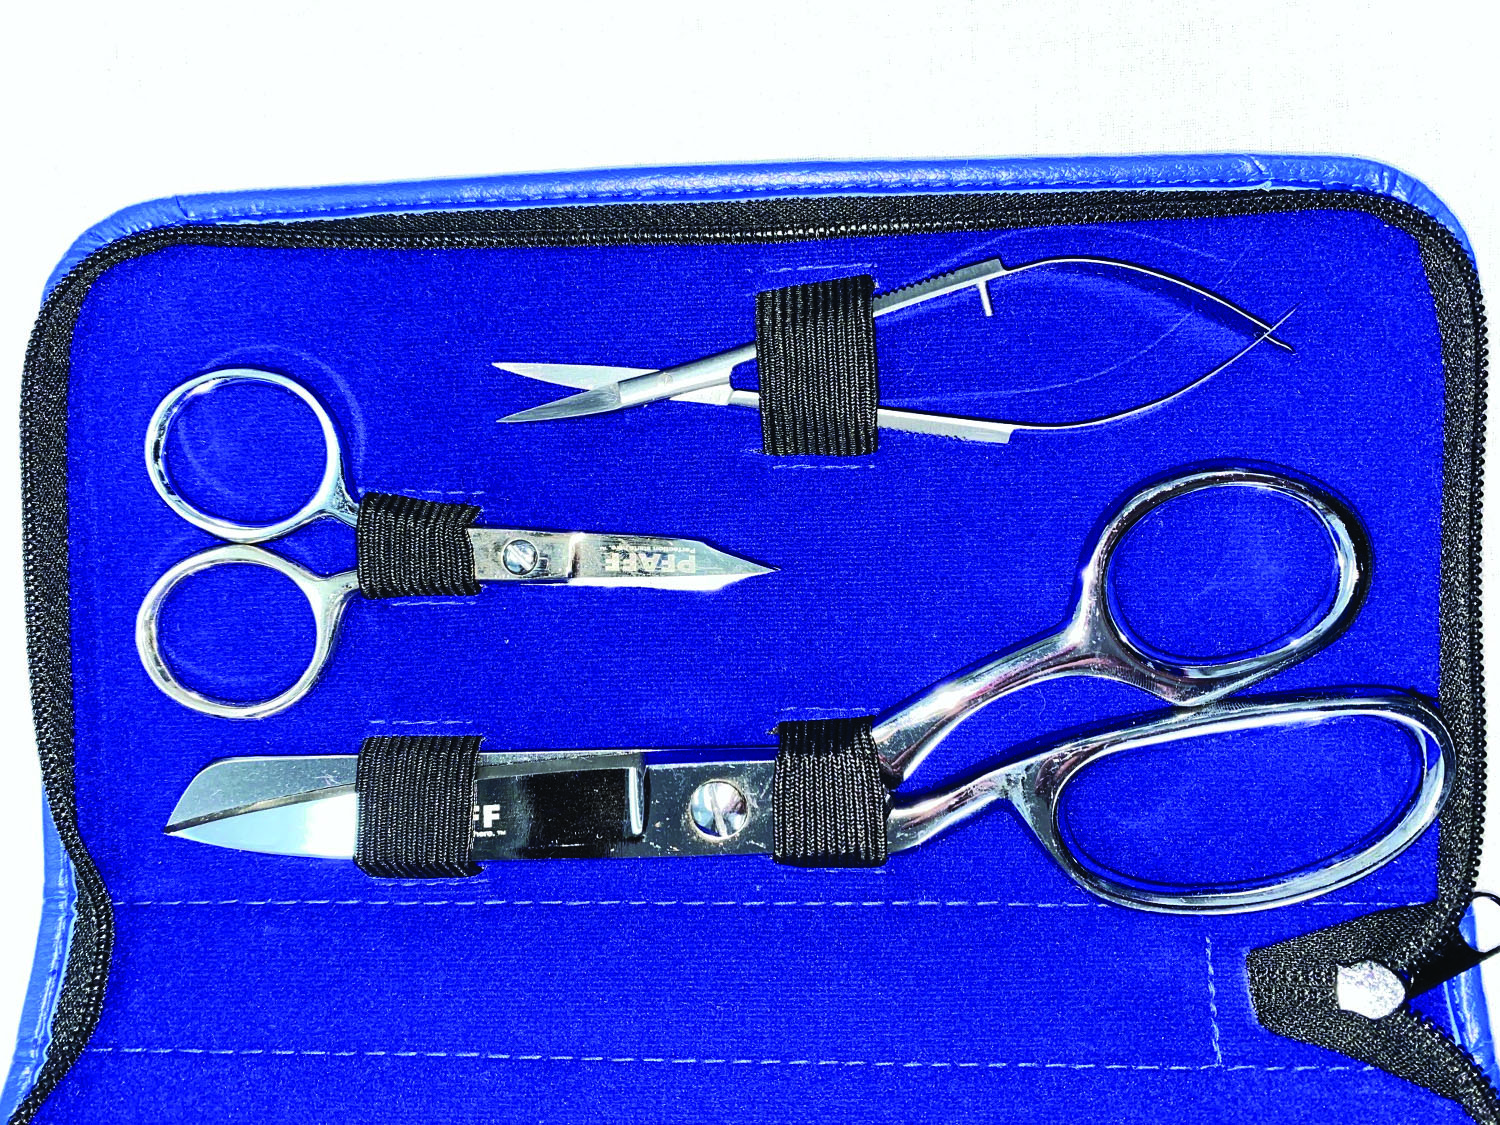 pfaff scissors case open